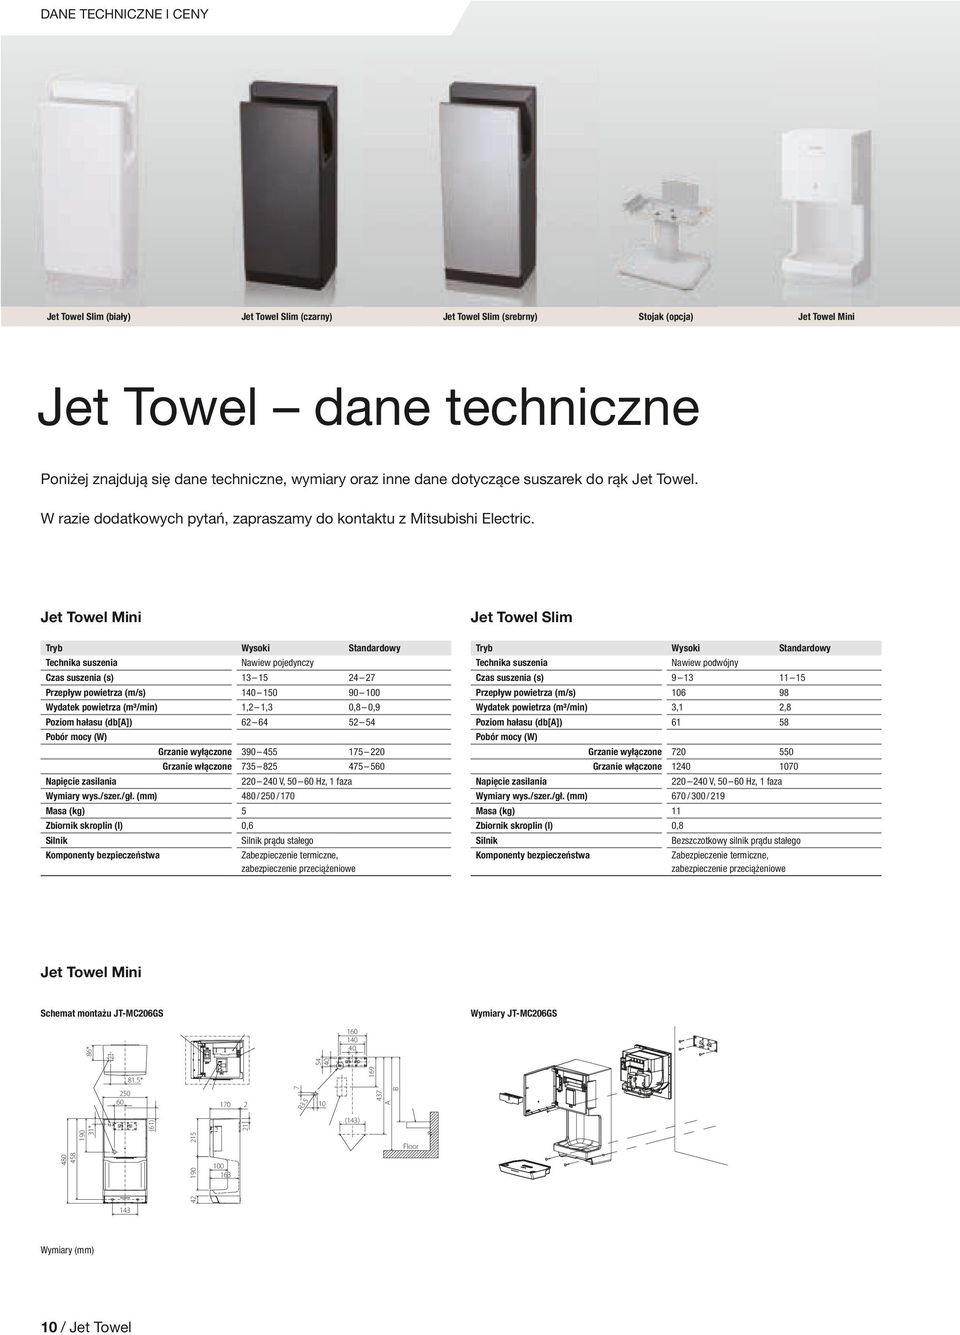 Jet Towel Mini Jet Towel Slim Tryb Technika suszenia Wysoki Nawiew pojedynczy Standardowy Tryb Technika suszenia Wysoki Nawiew podwójny Standardowy Czas suszenia (s) Przepływ powietrza (m/s) Wydatek